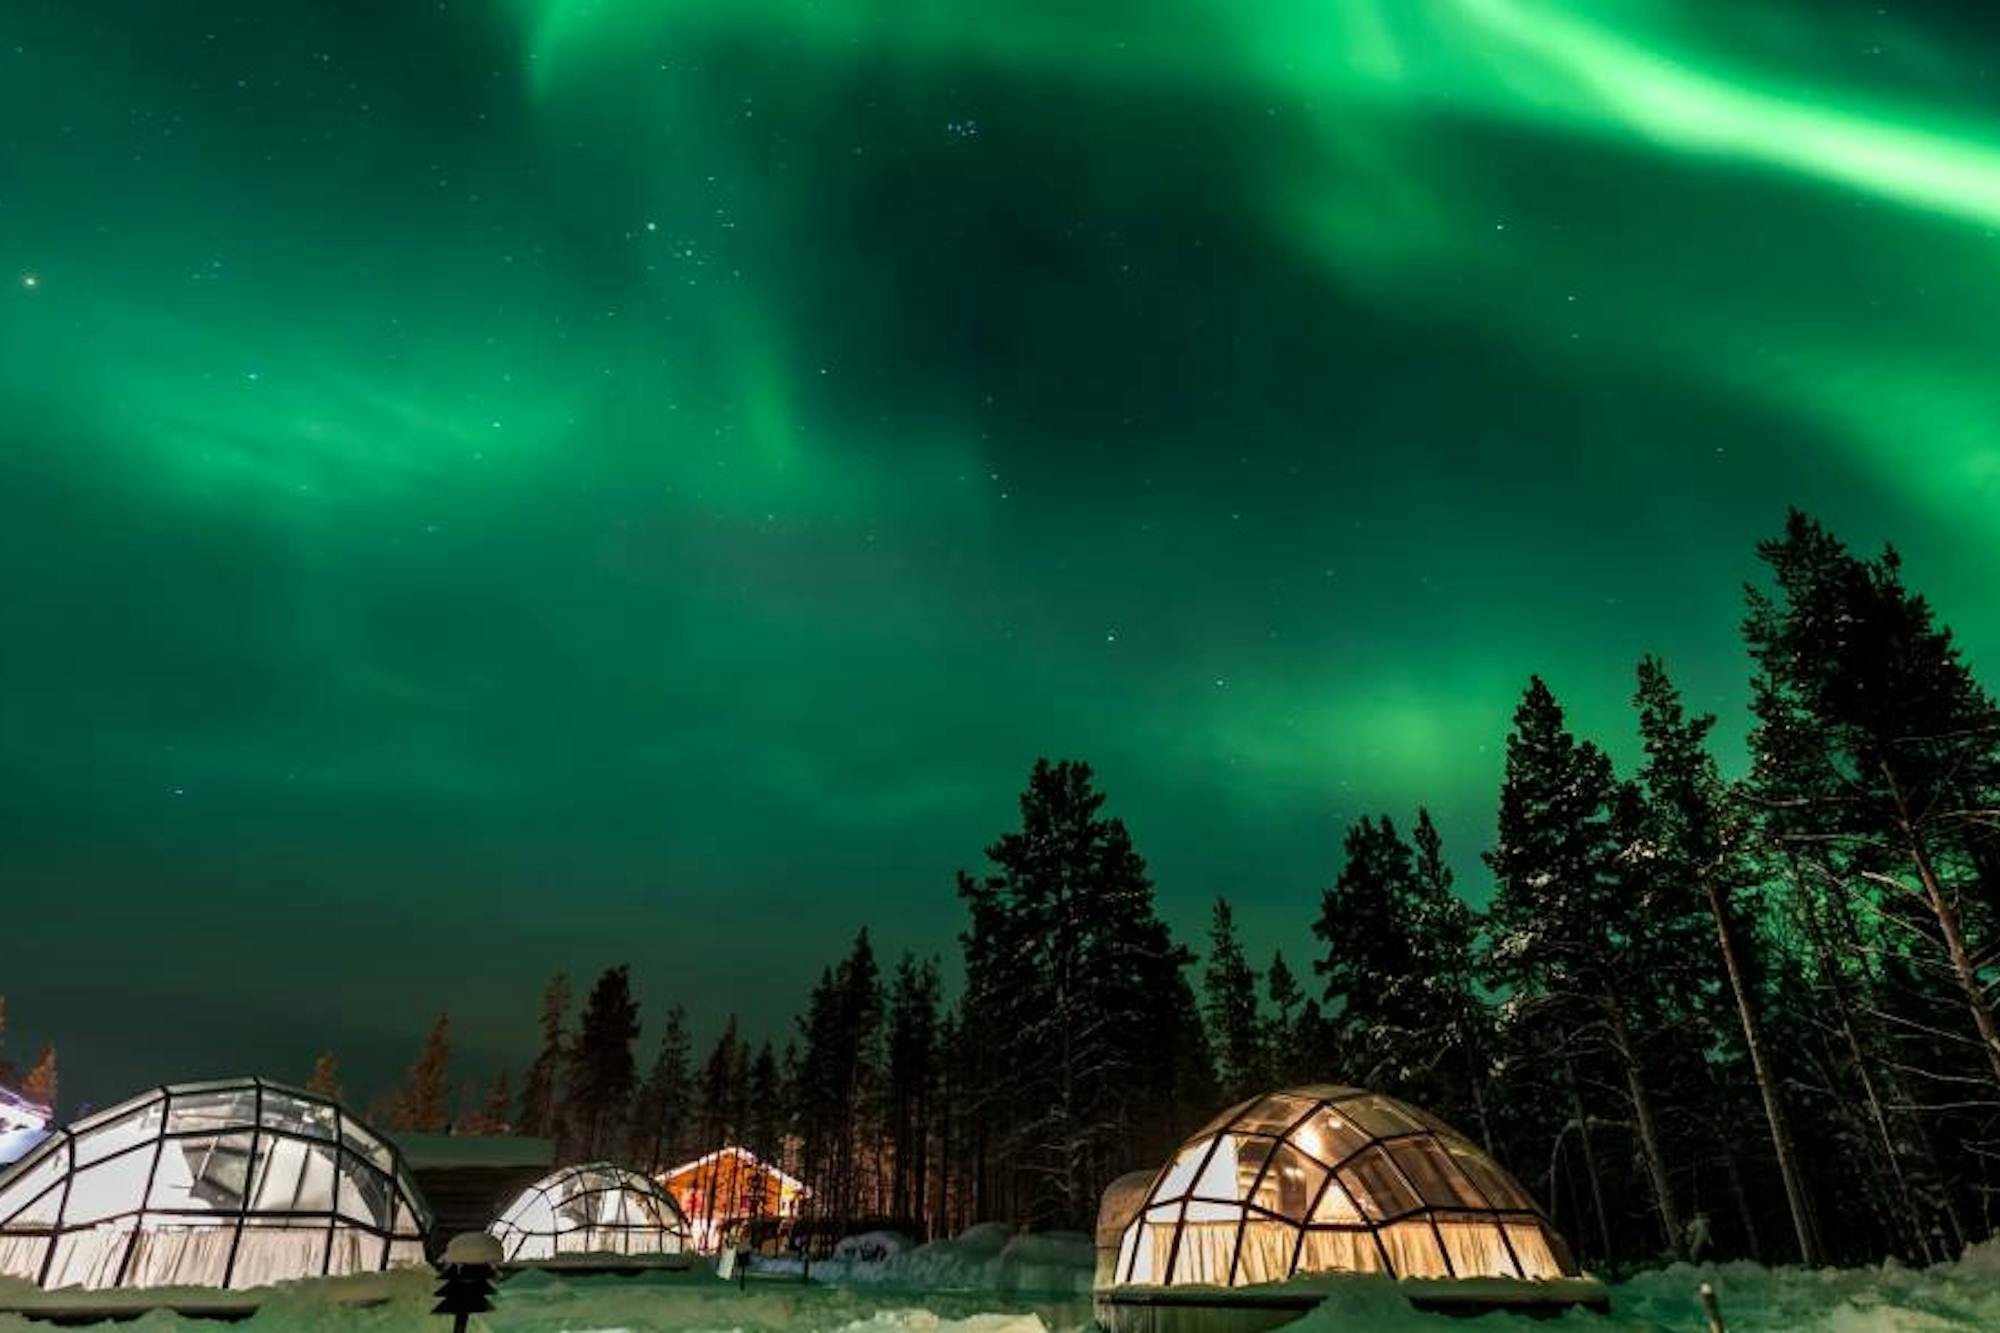 campervan-rental-finland-book-with-indie-campers